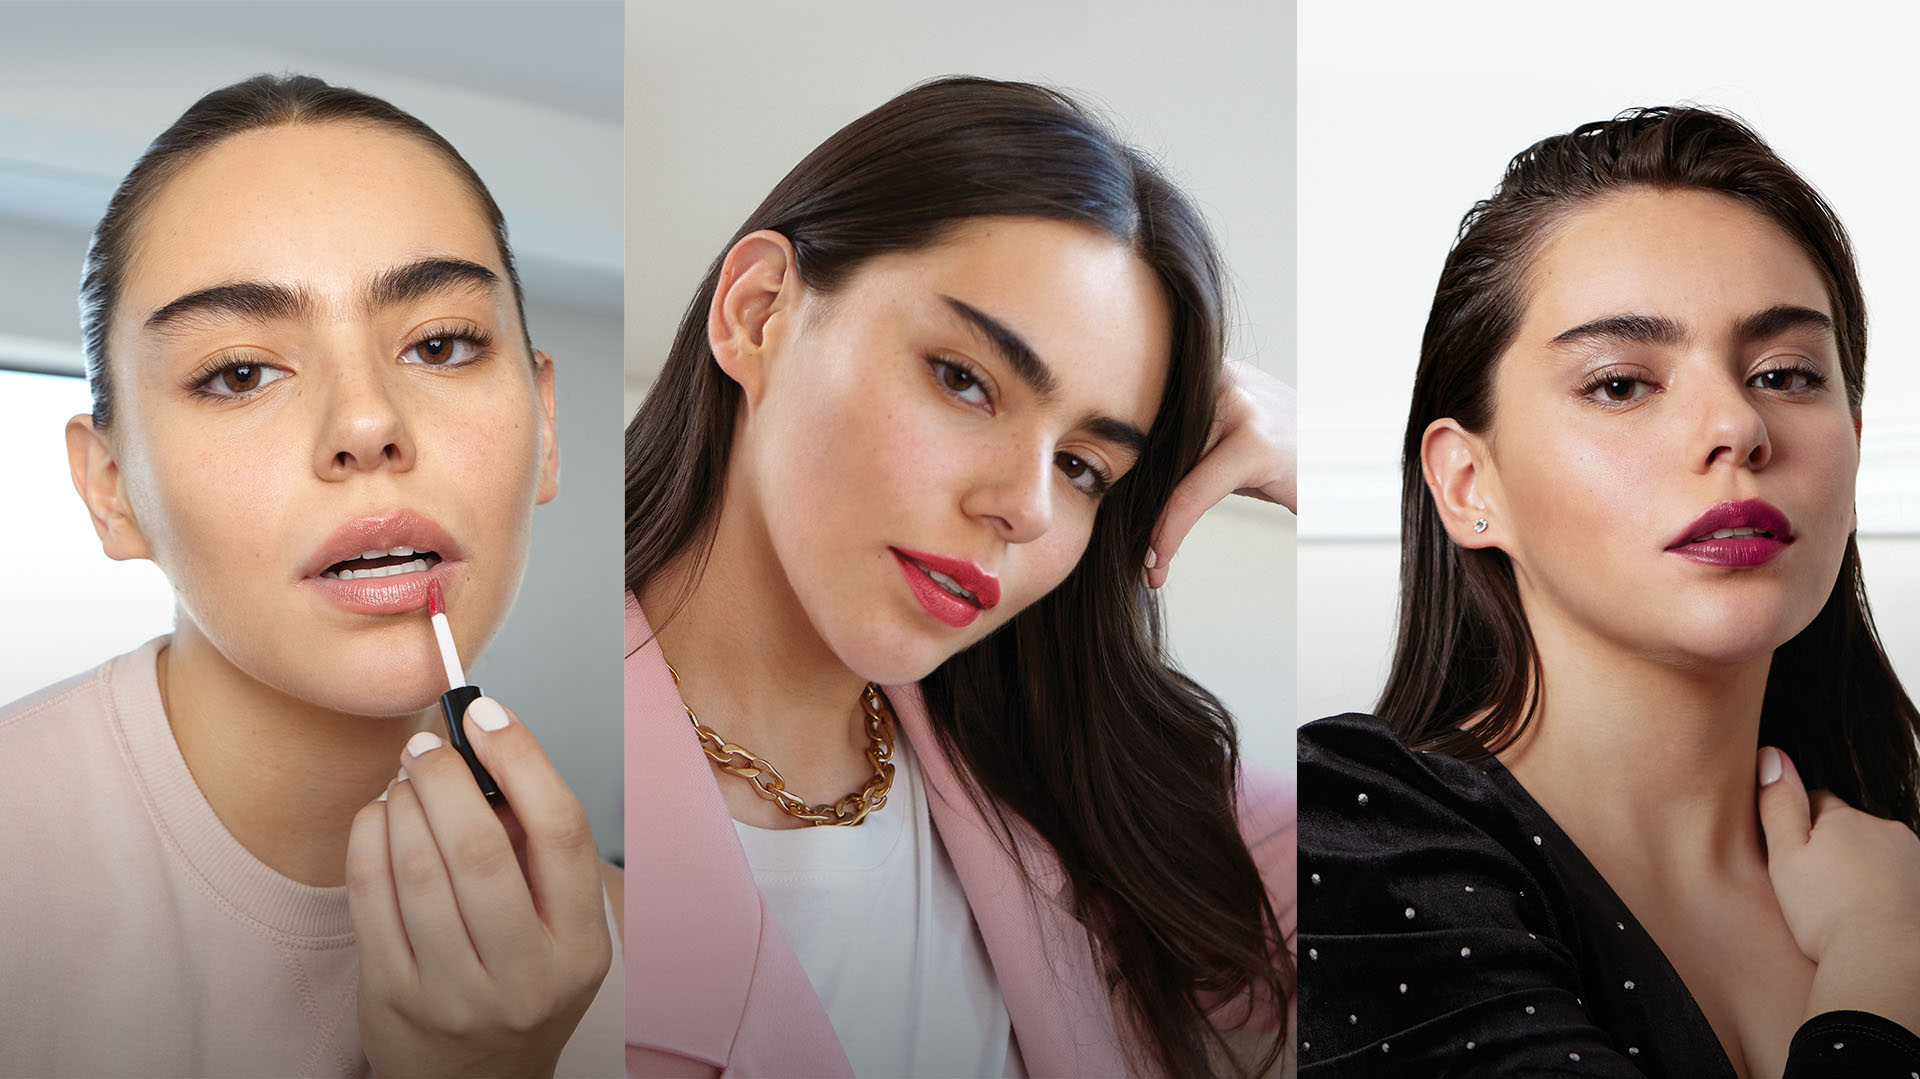 Cómo es la nueva tendencia de maquillaje limpio y natural - Infobae